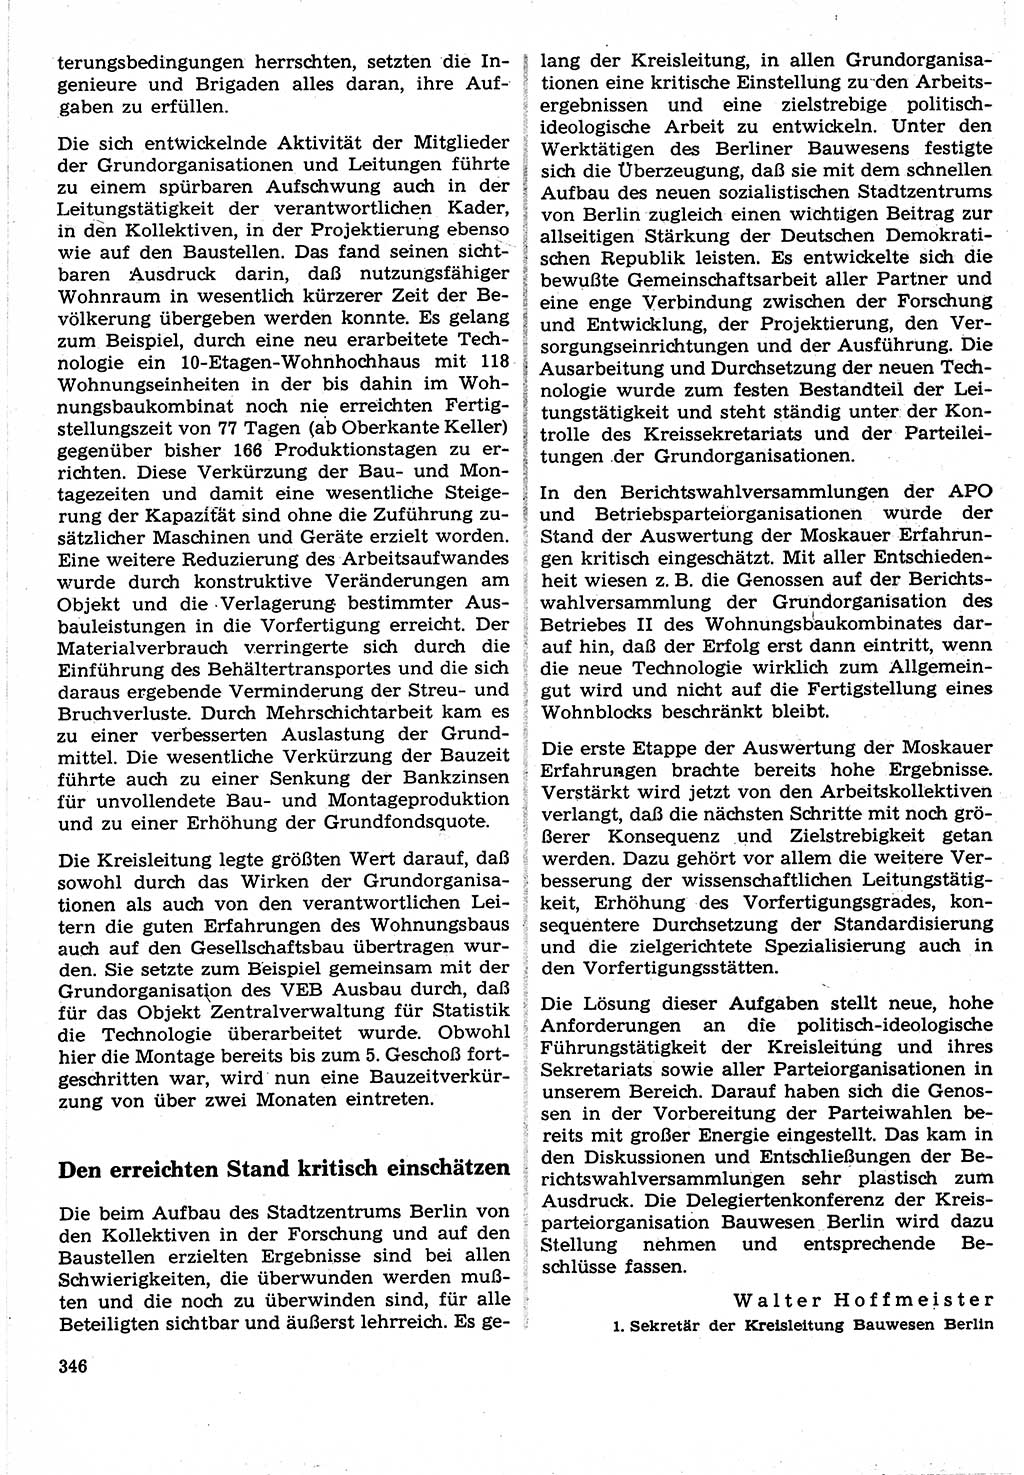 Neuer Weg (NW), Organ des Zentralkomitees (ZK) der SED (Sozialistische Einheitspartei Deutschlands) für Fragen des Parteilebens, 24. Jahrgang [Deutsche Demokratische Republik (DDR)] 1969, Seite 346 (NW ZK SED DDR 1969, S. 346)